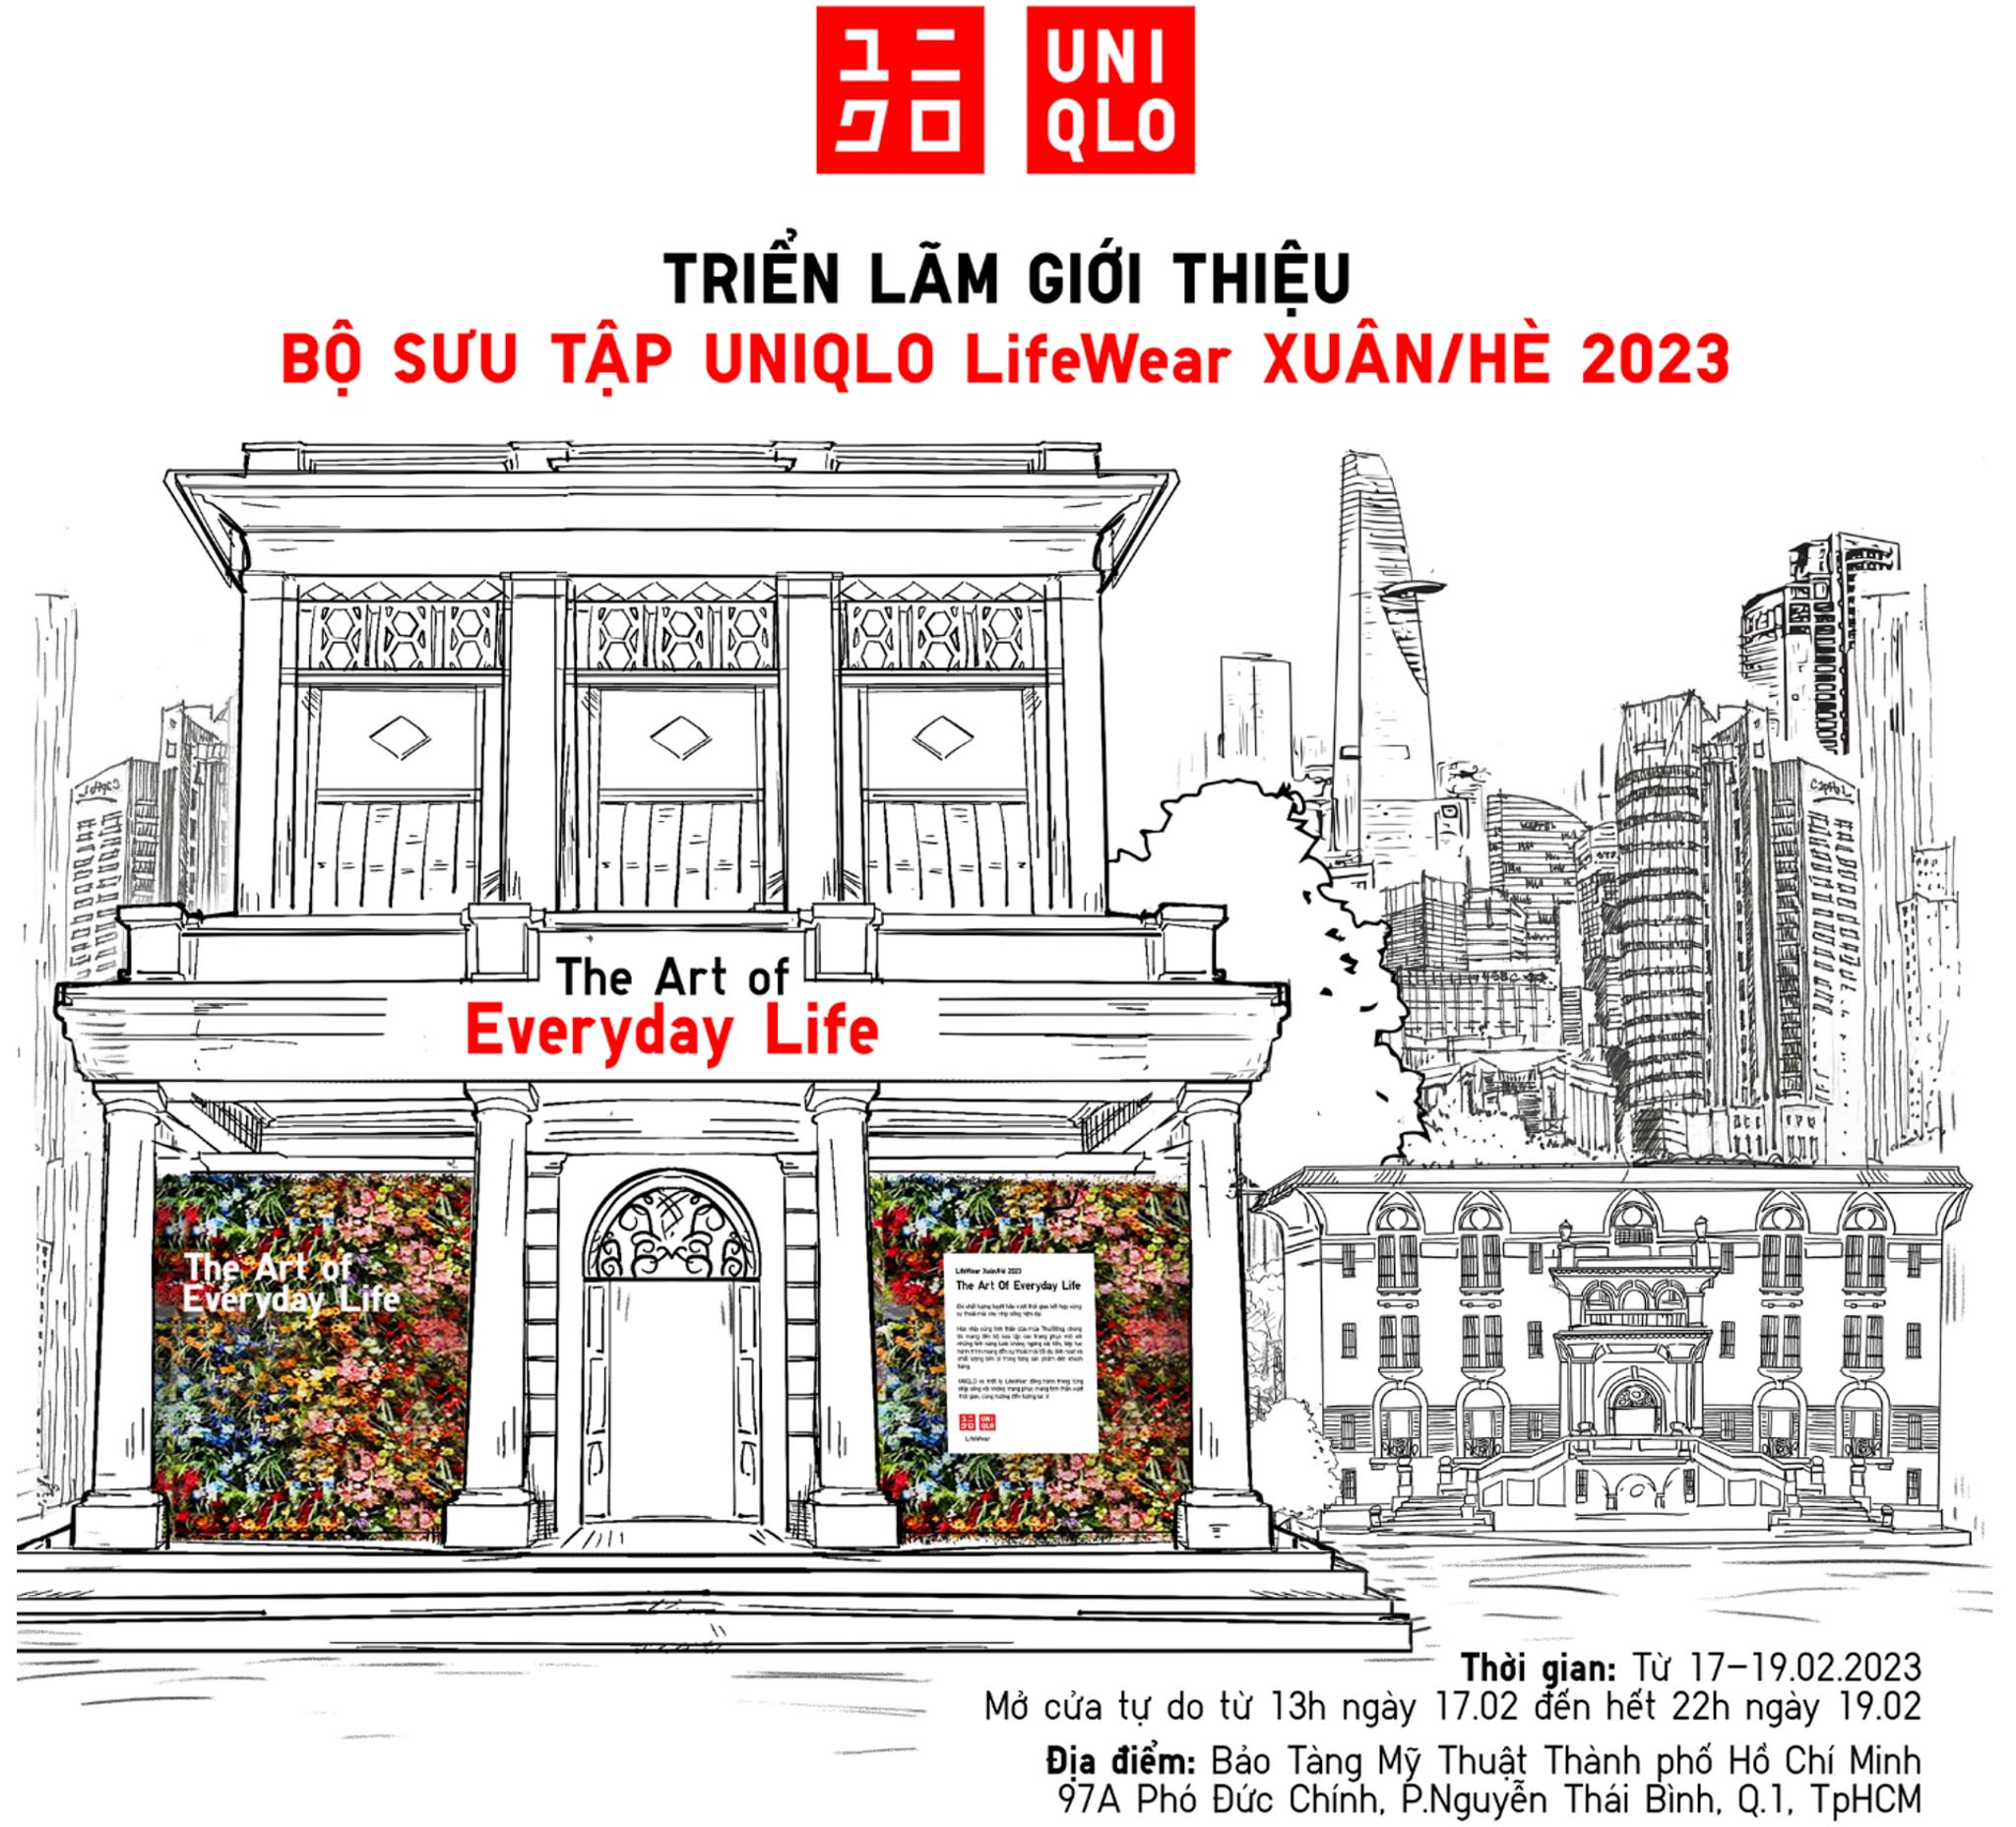 UNIQLO mang đến Triển lãm giới thiệu BST Lifewear Xuân/Hè 2023 với chủ đề “The Art of Everyday Life” tại Bảo tàng Mỹ thuật TP. Hồ Chí Minh